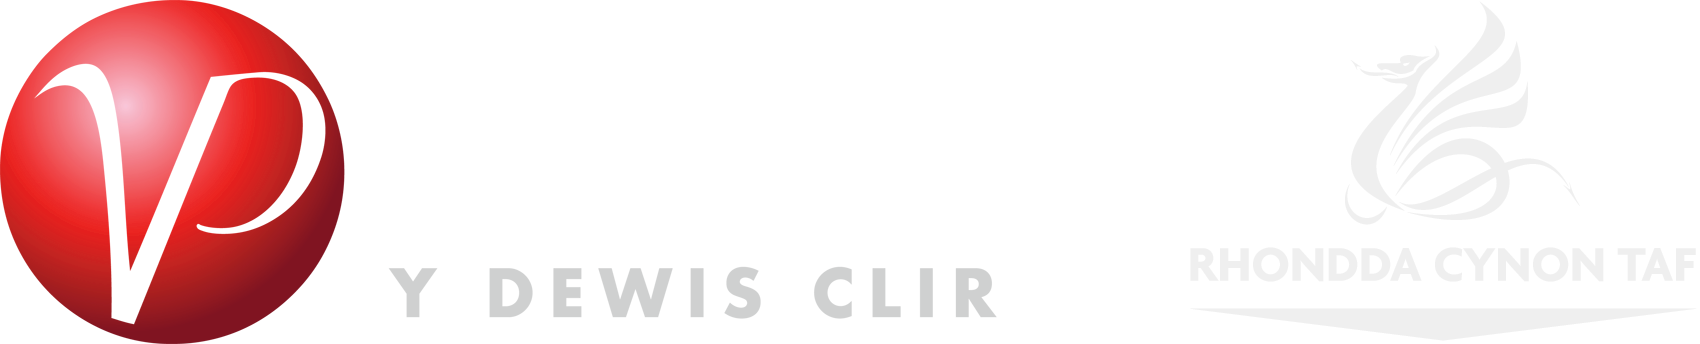 Vision Products, Rhondda Cynon Taf